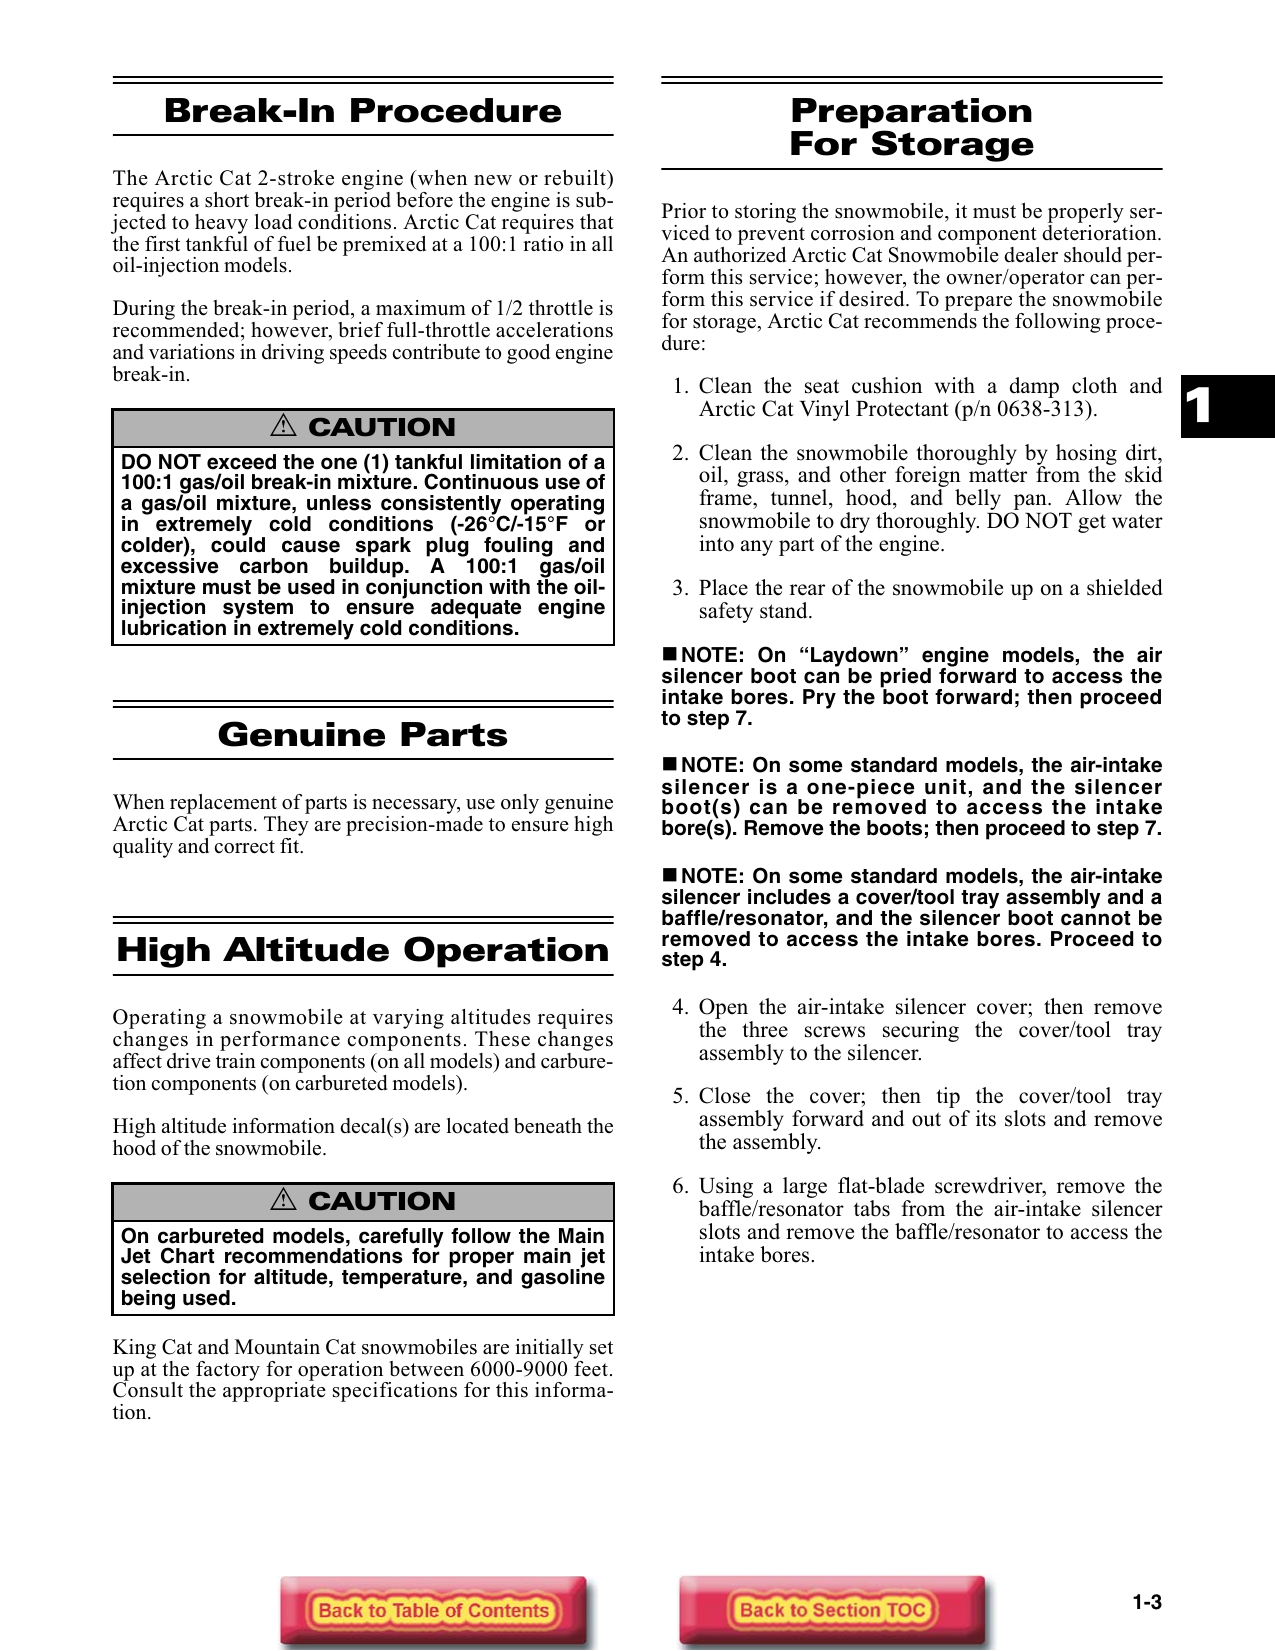 2004 Arctic Cat (all models) snowmobile repair manual Preview image 5